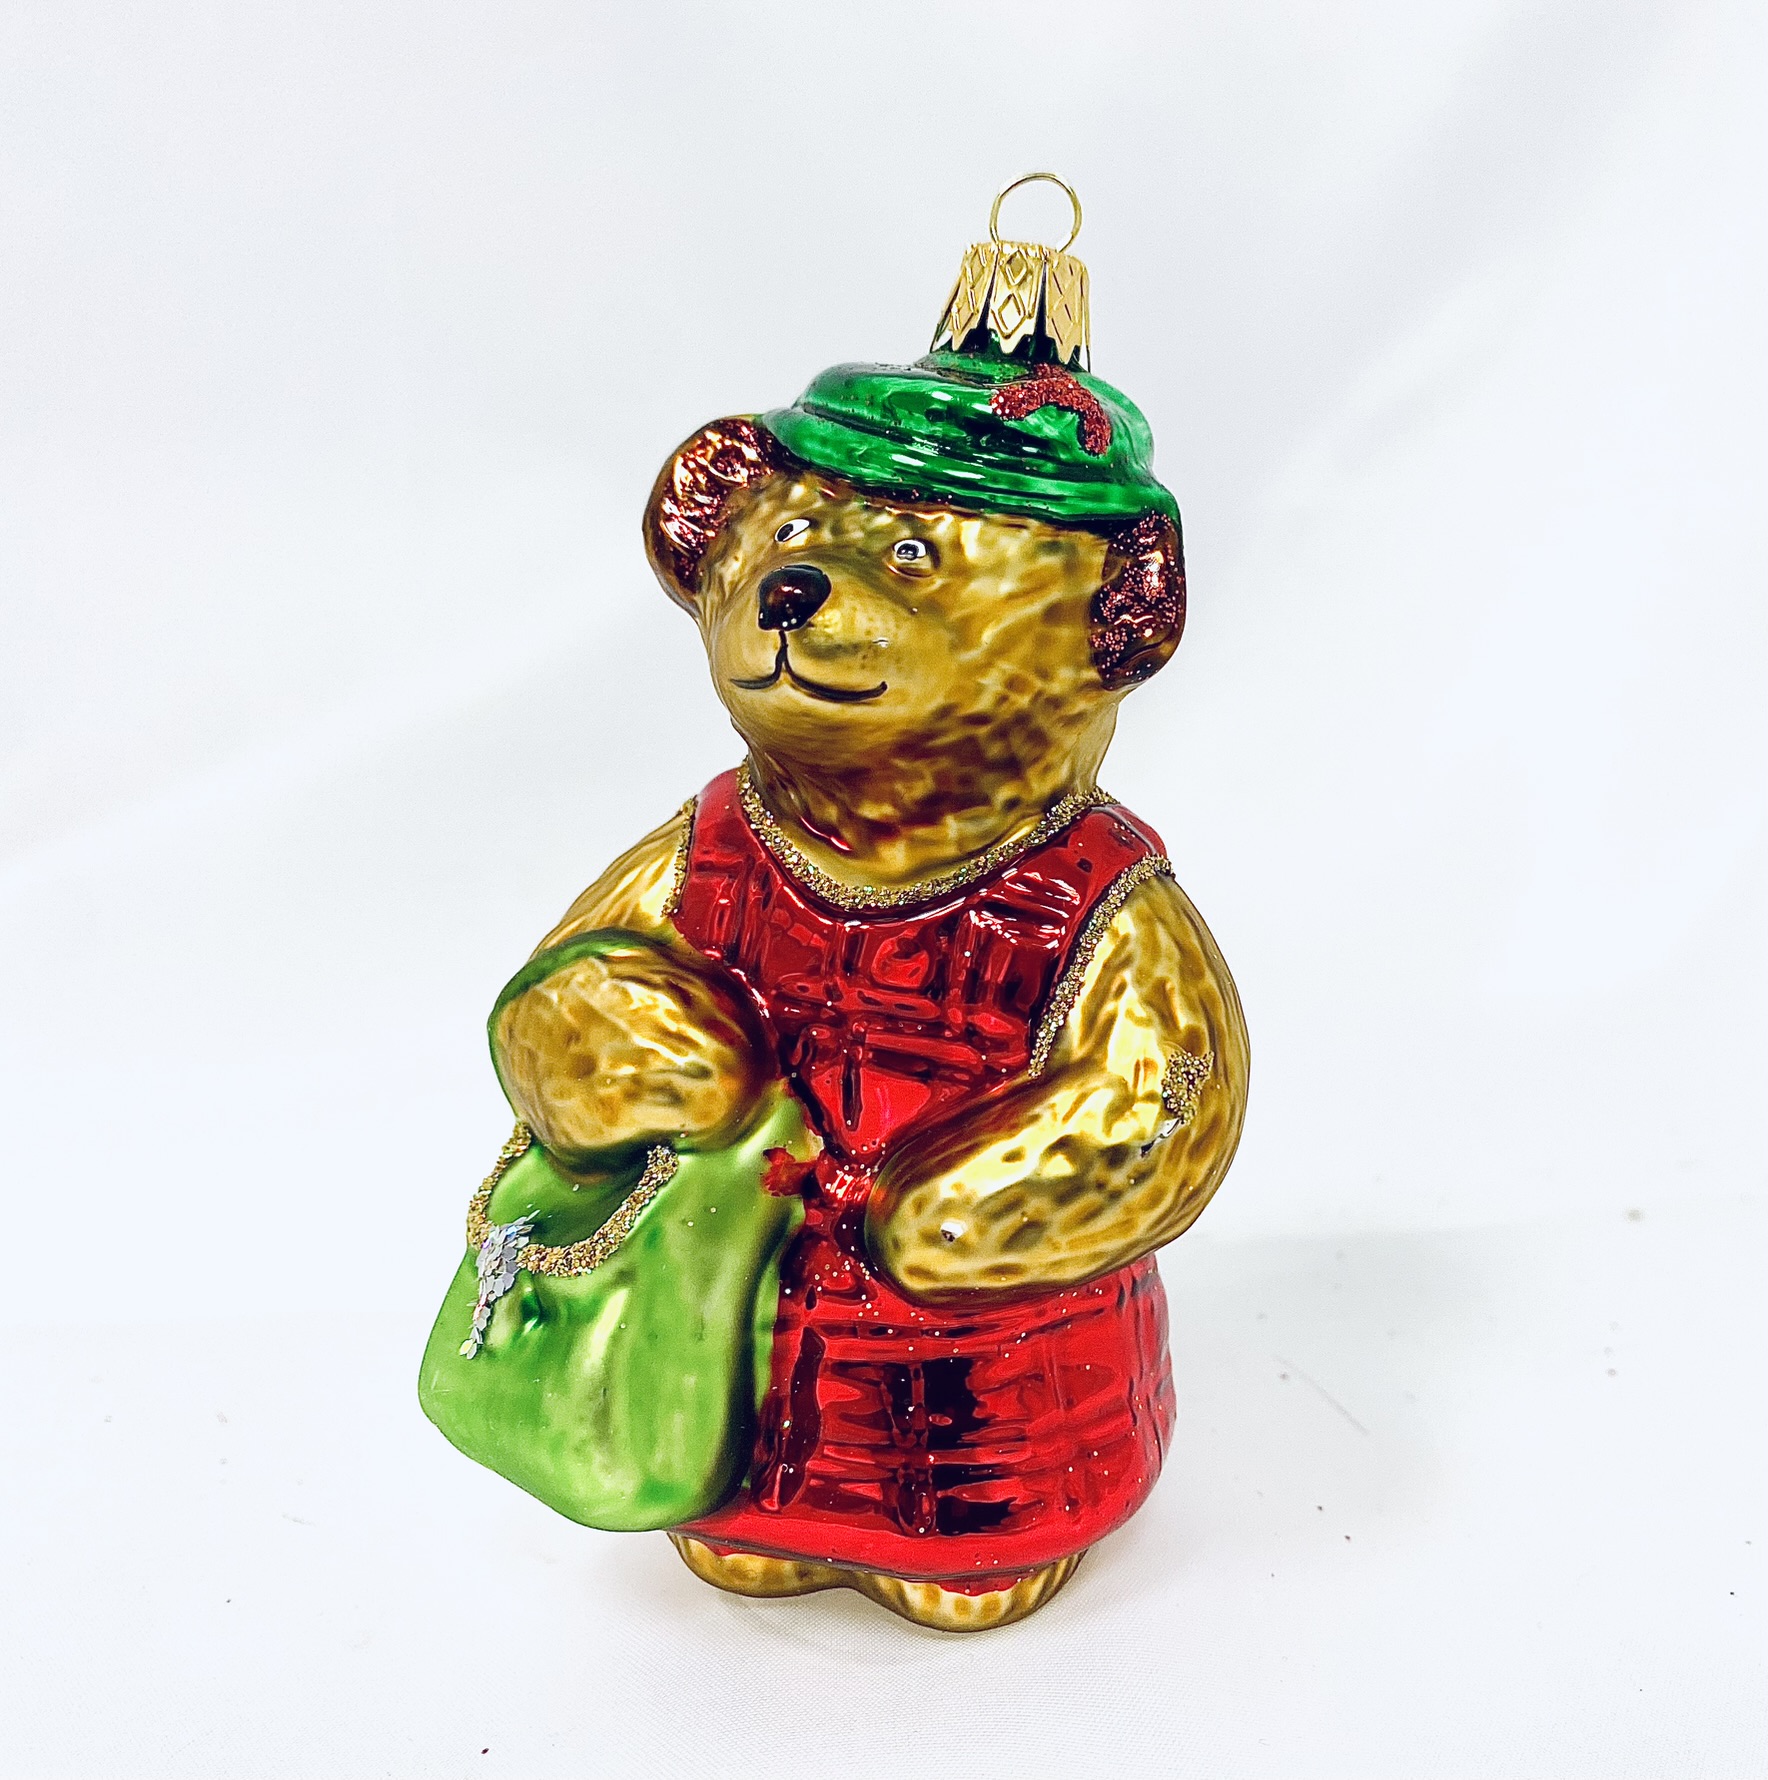 IRISA Skleněná vánoční ozdoba "Medvědí máma" velikost 10 cm zelený klobouček Balení: 1 balení, Barva: hnědá, Velikost: 10 cm